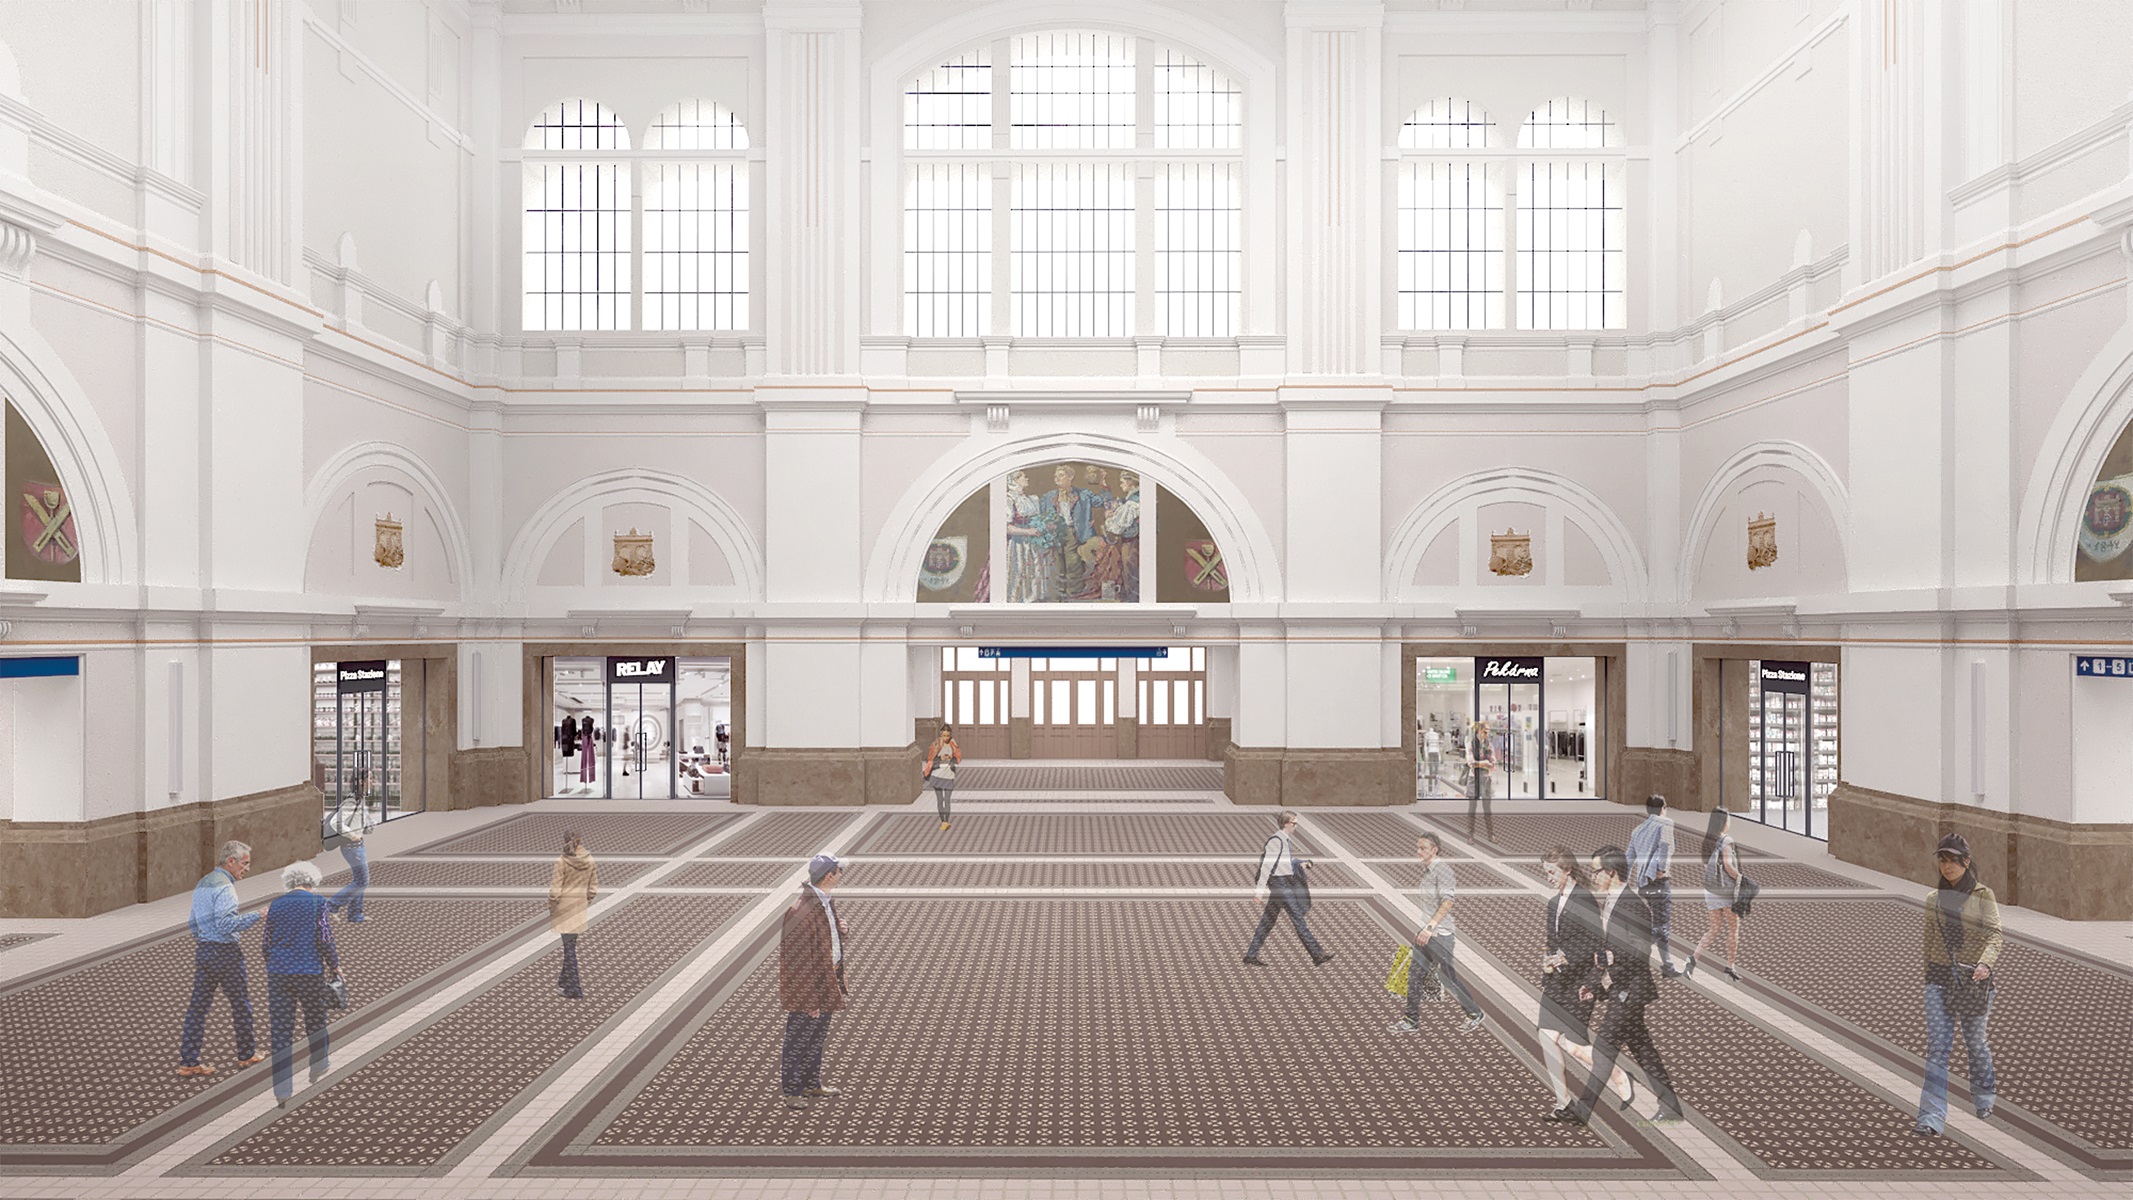 Vizualizácia rekonštrukcie železničnej stanice v Plzni.